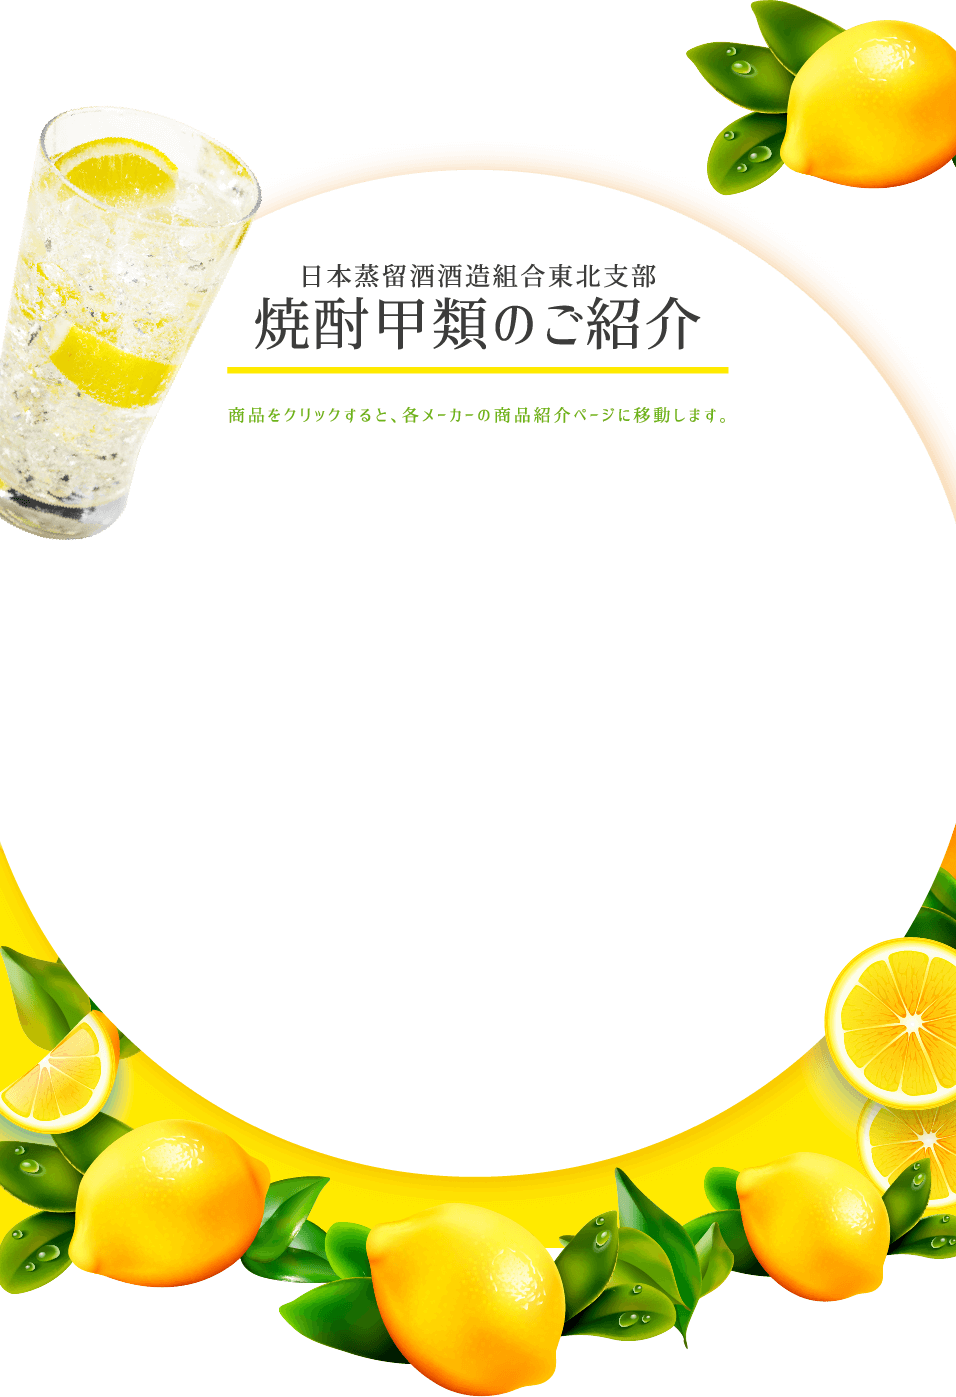 日本蒸留酒酒造組合東北支部 焼酎甲類のご紹介 商品をクリックすると、各メーカーの商品紹介ページに移動します。